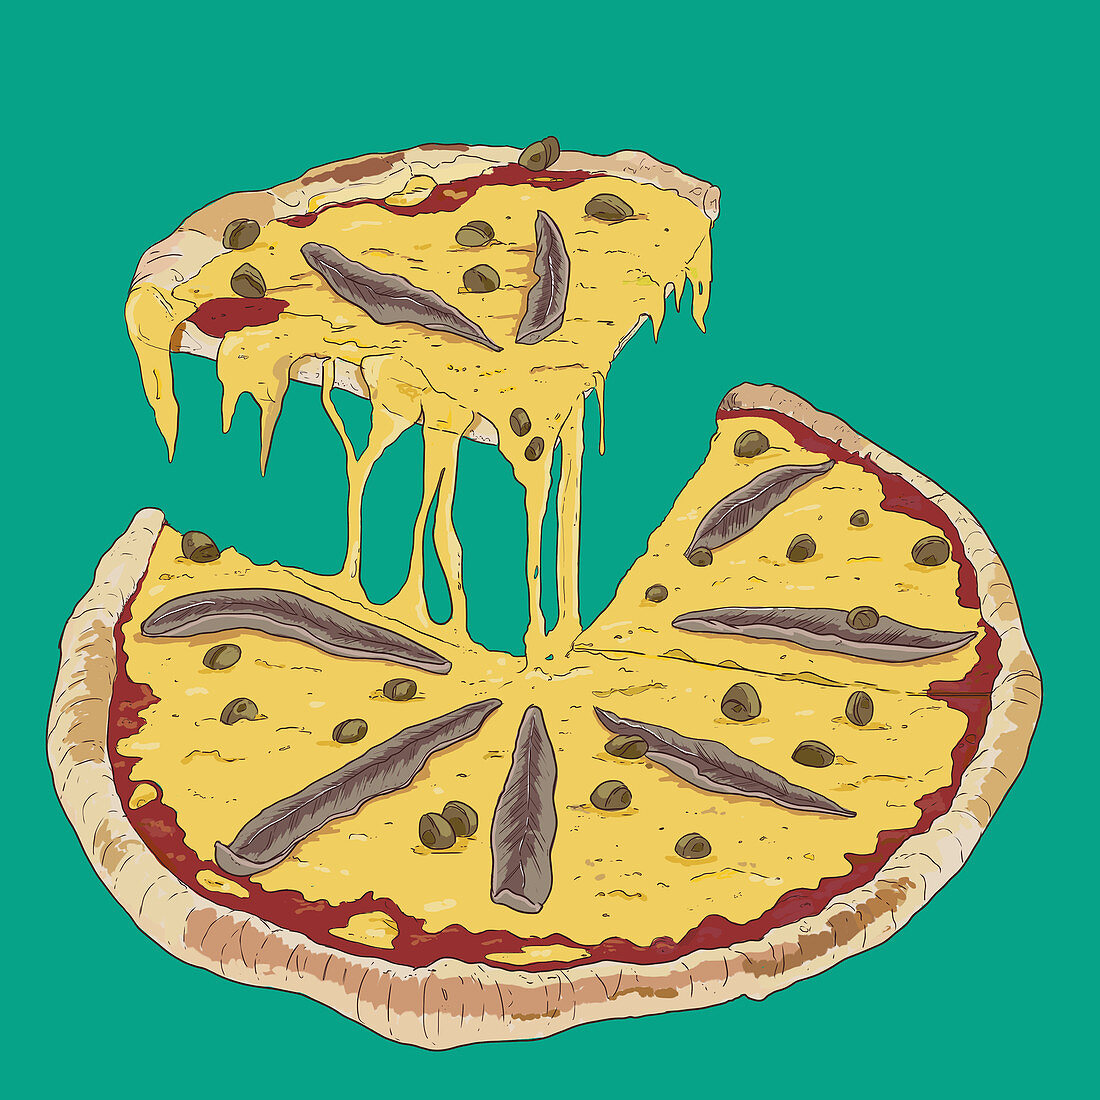 Pizza mit Anchovis, angeschnitten (Illustration)